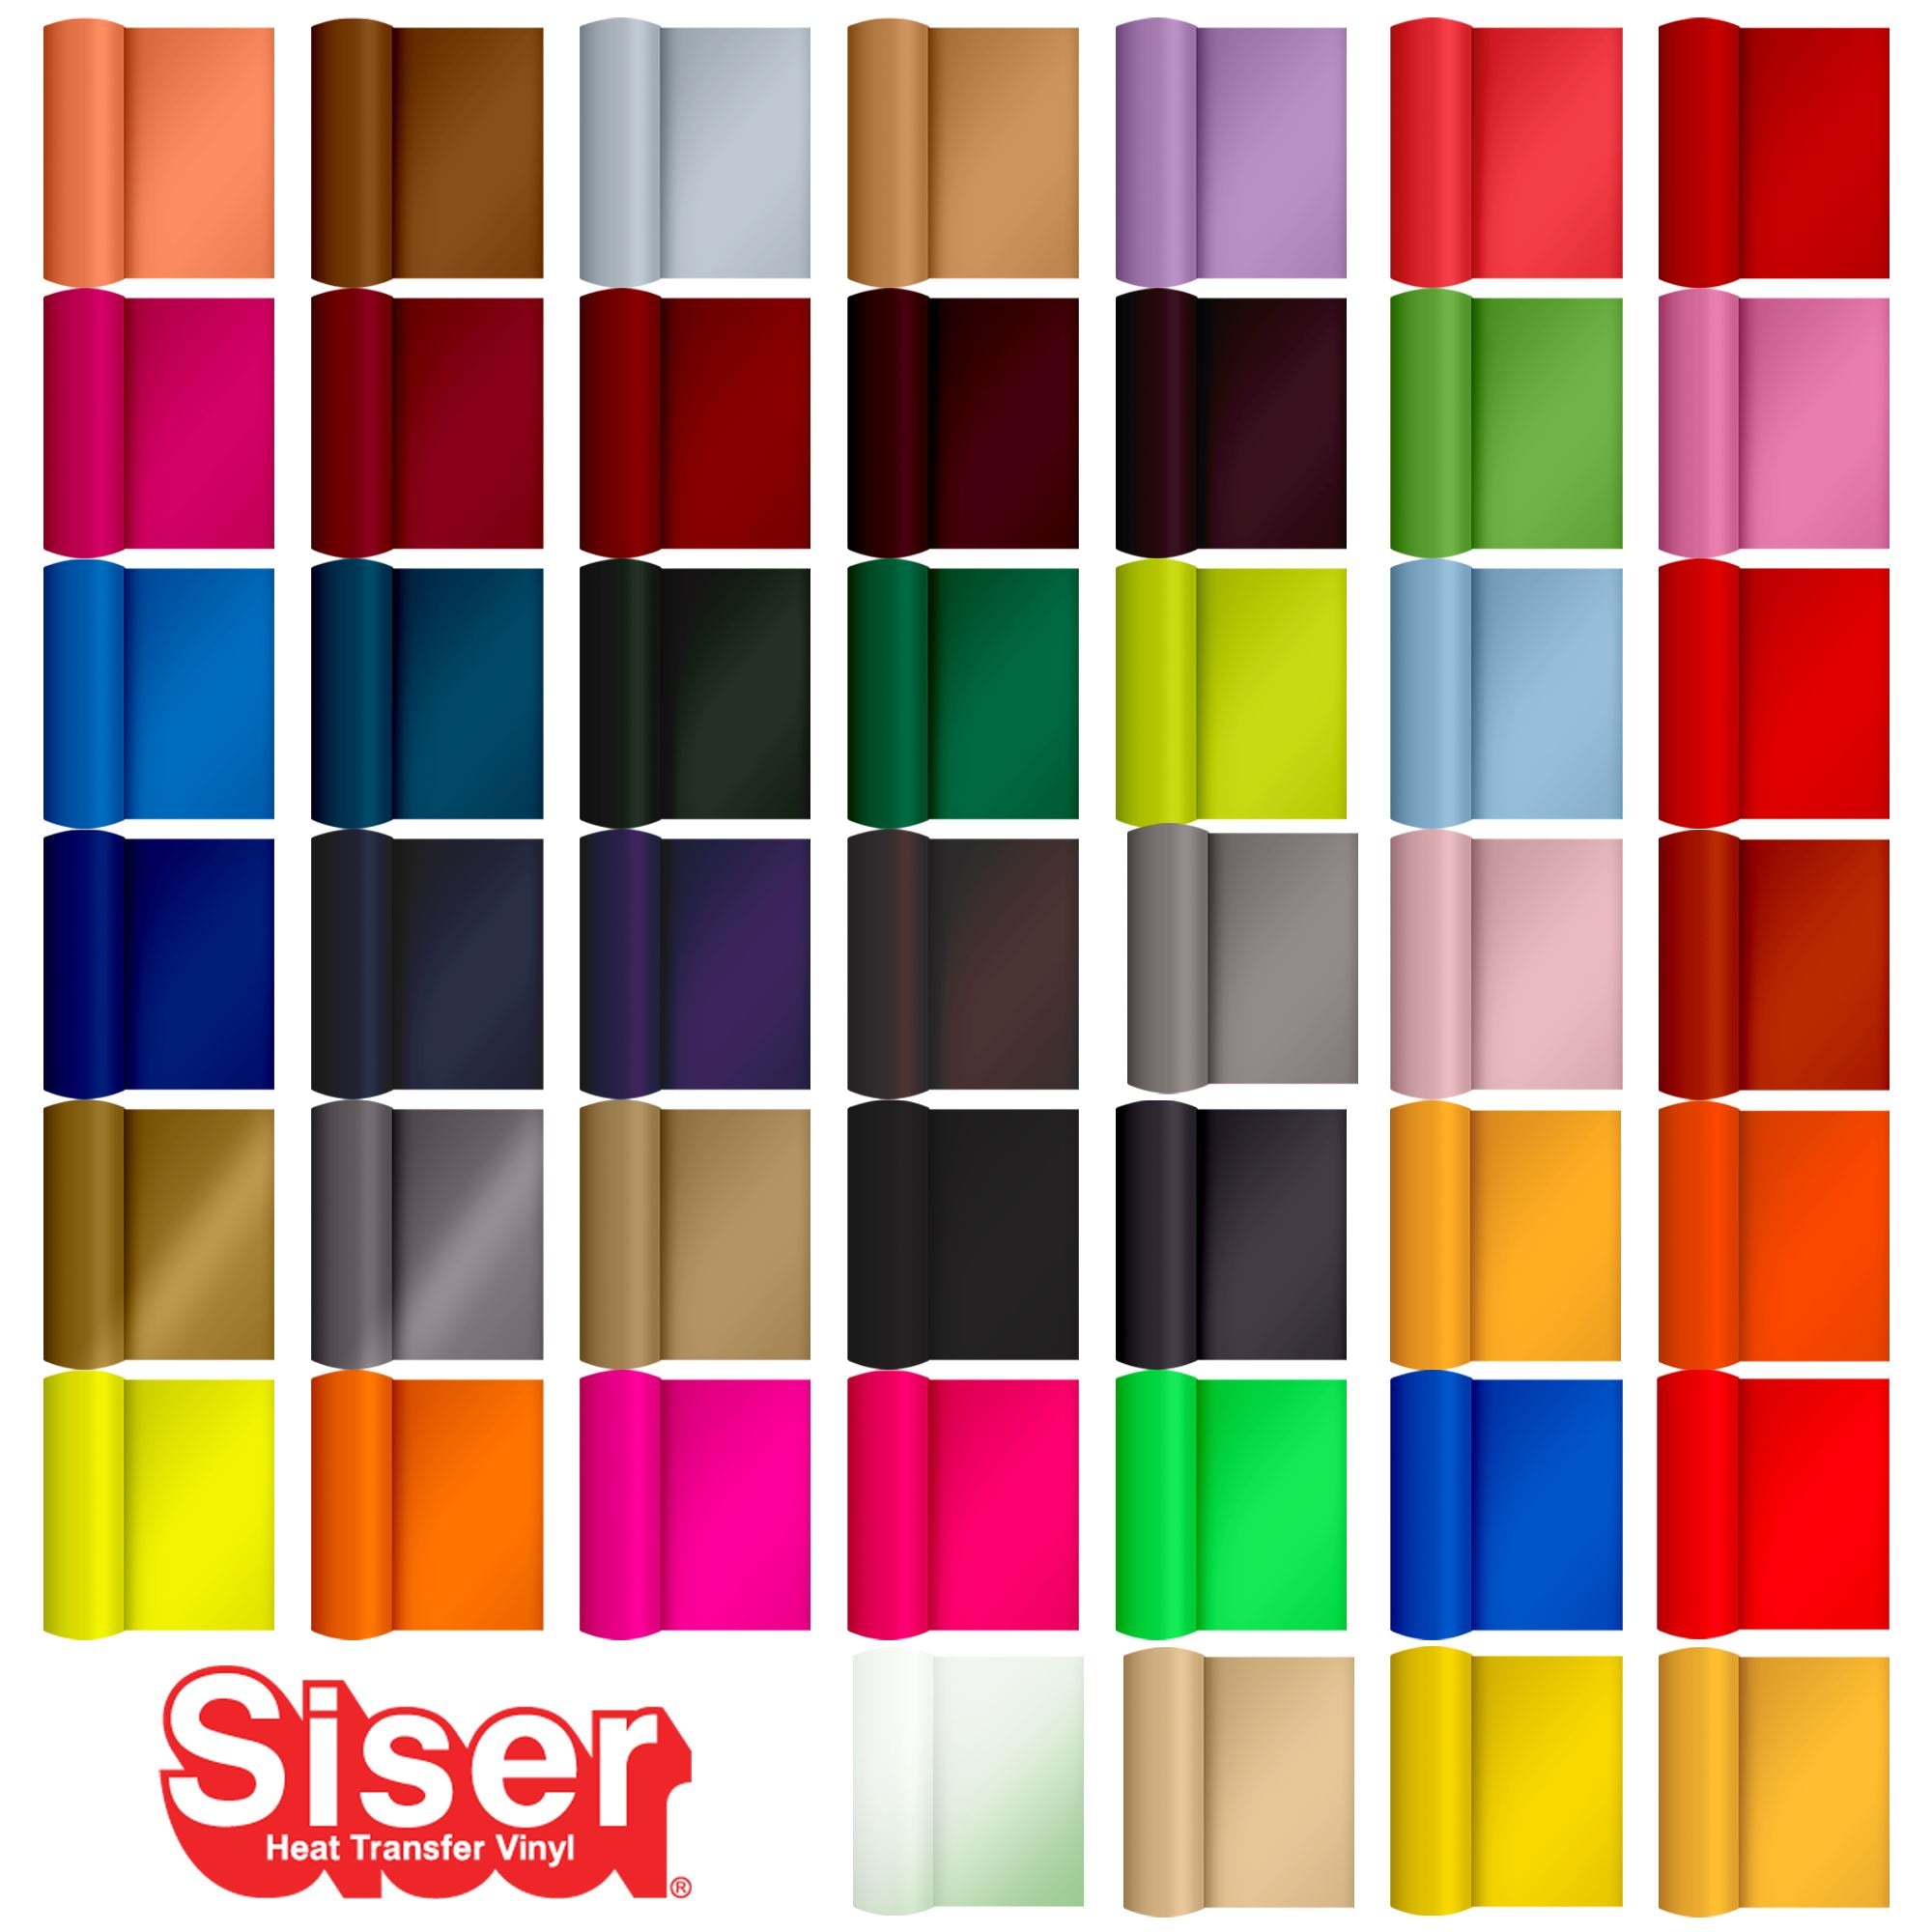 Siser Glitter Heat Transfer Vinyl (HTV) 20 x 150 ft Roll - 45 Colors Available, White